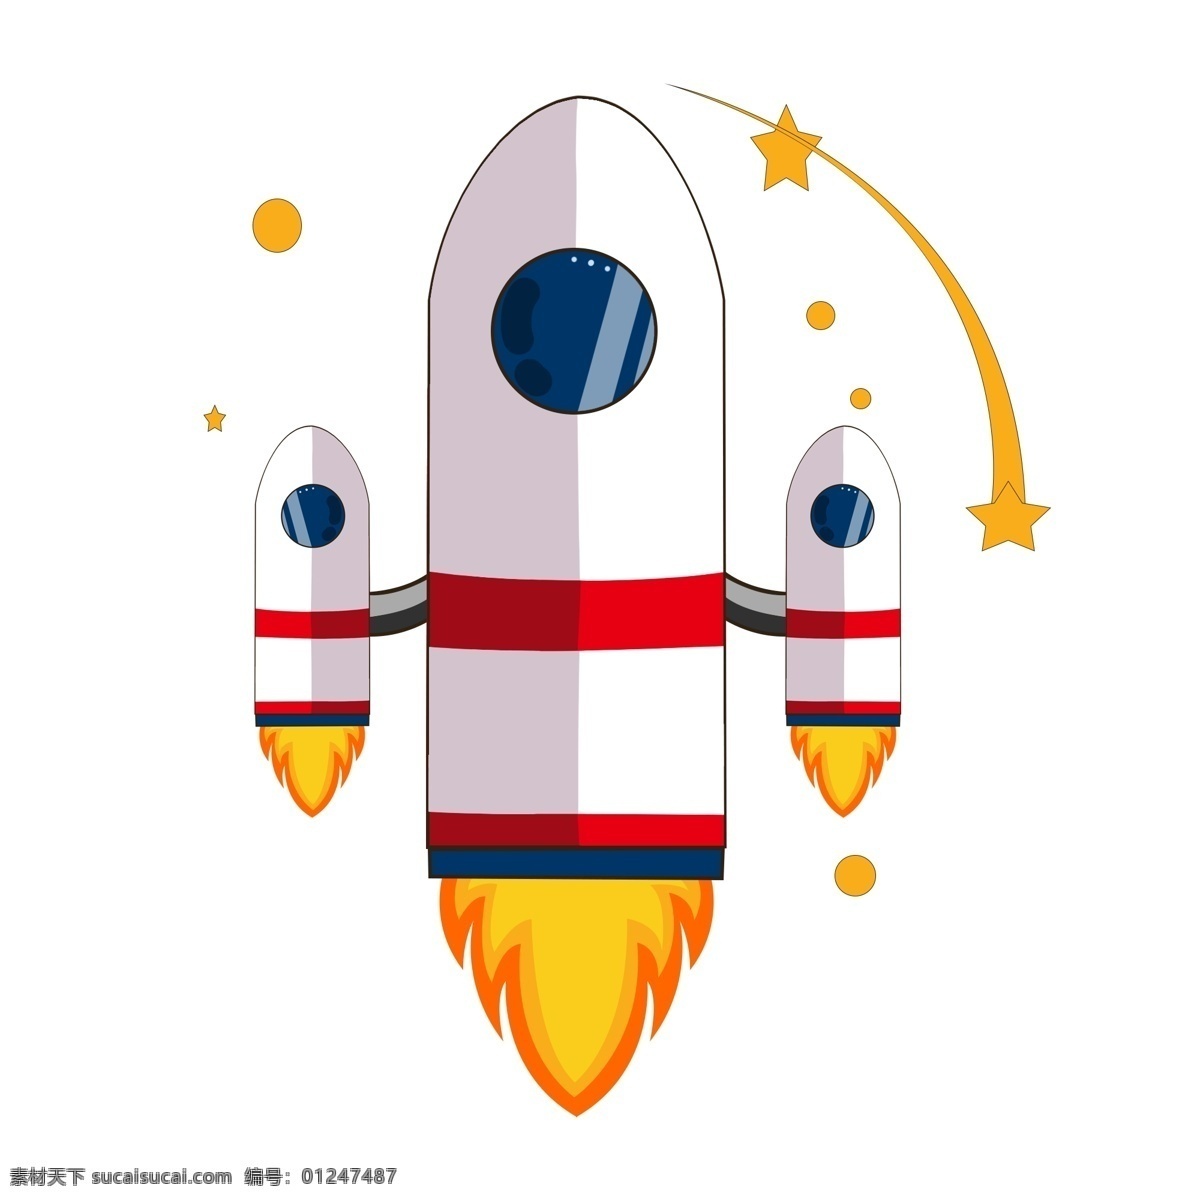 星星 航天 日 图案 插图 白色火箭插图 星星装饰 世界航天日 太空探测仪 一架火箭 火箭飞船 科学探测